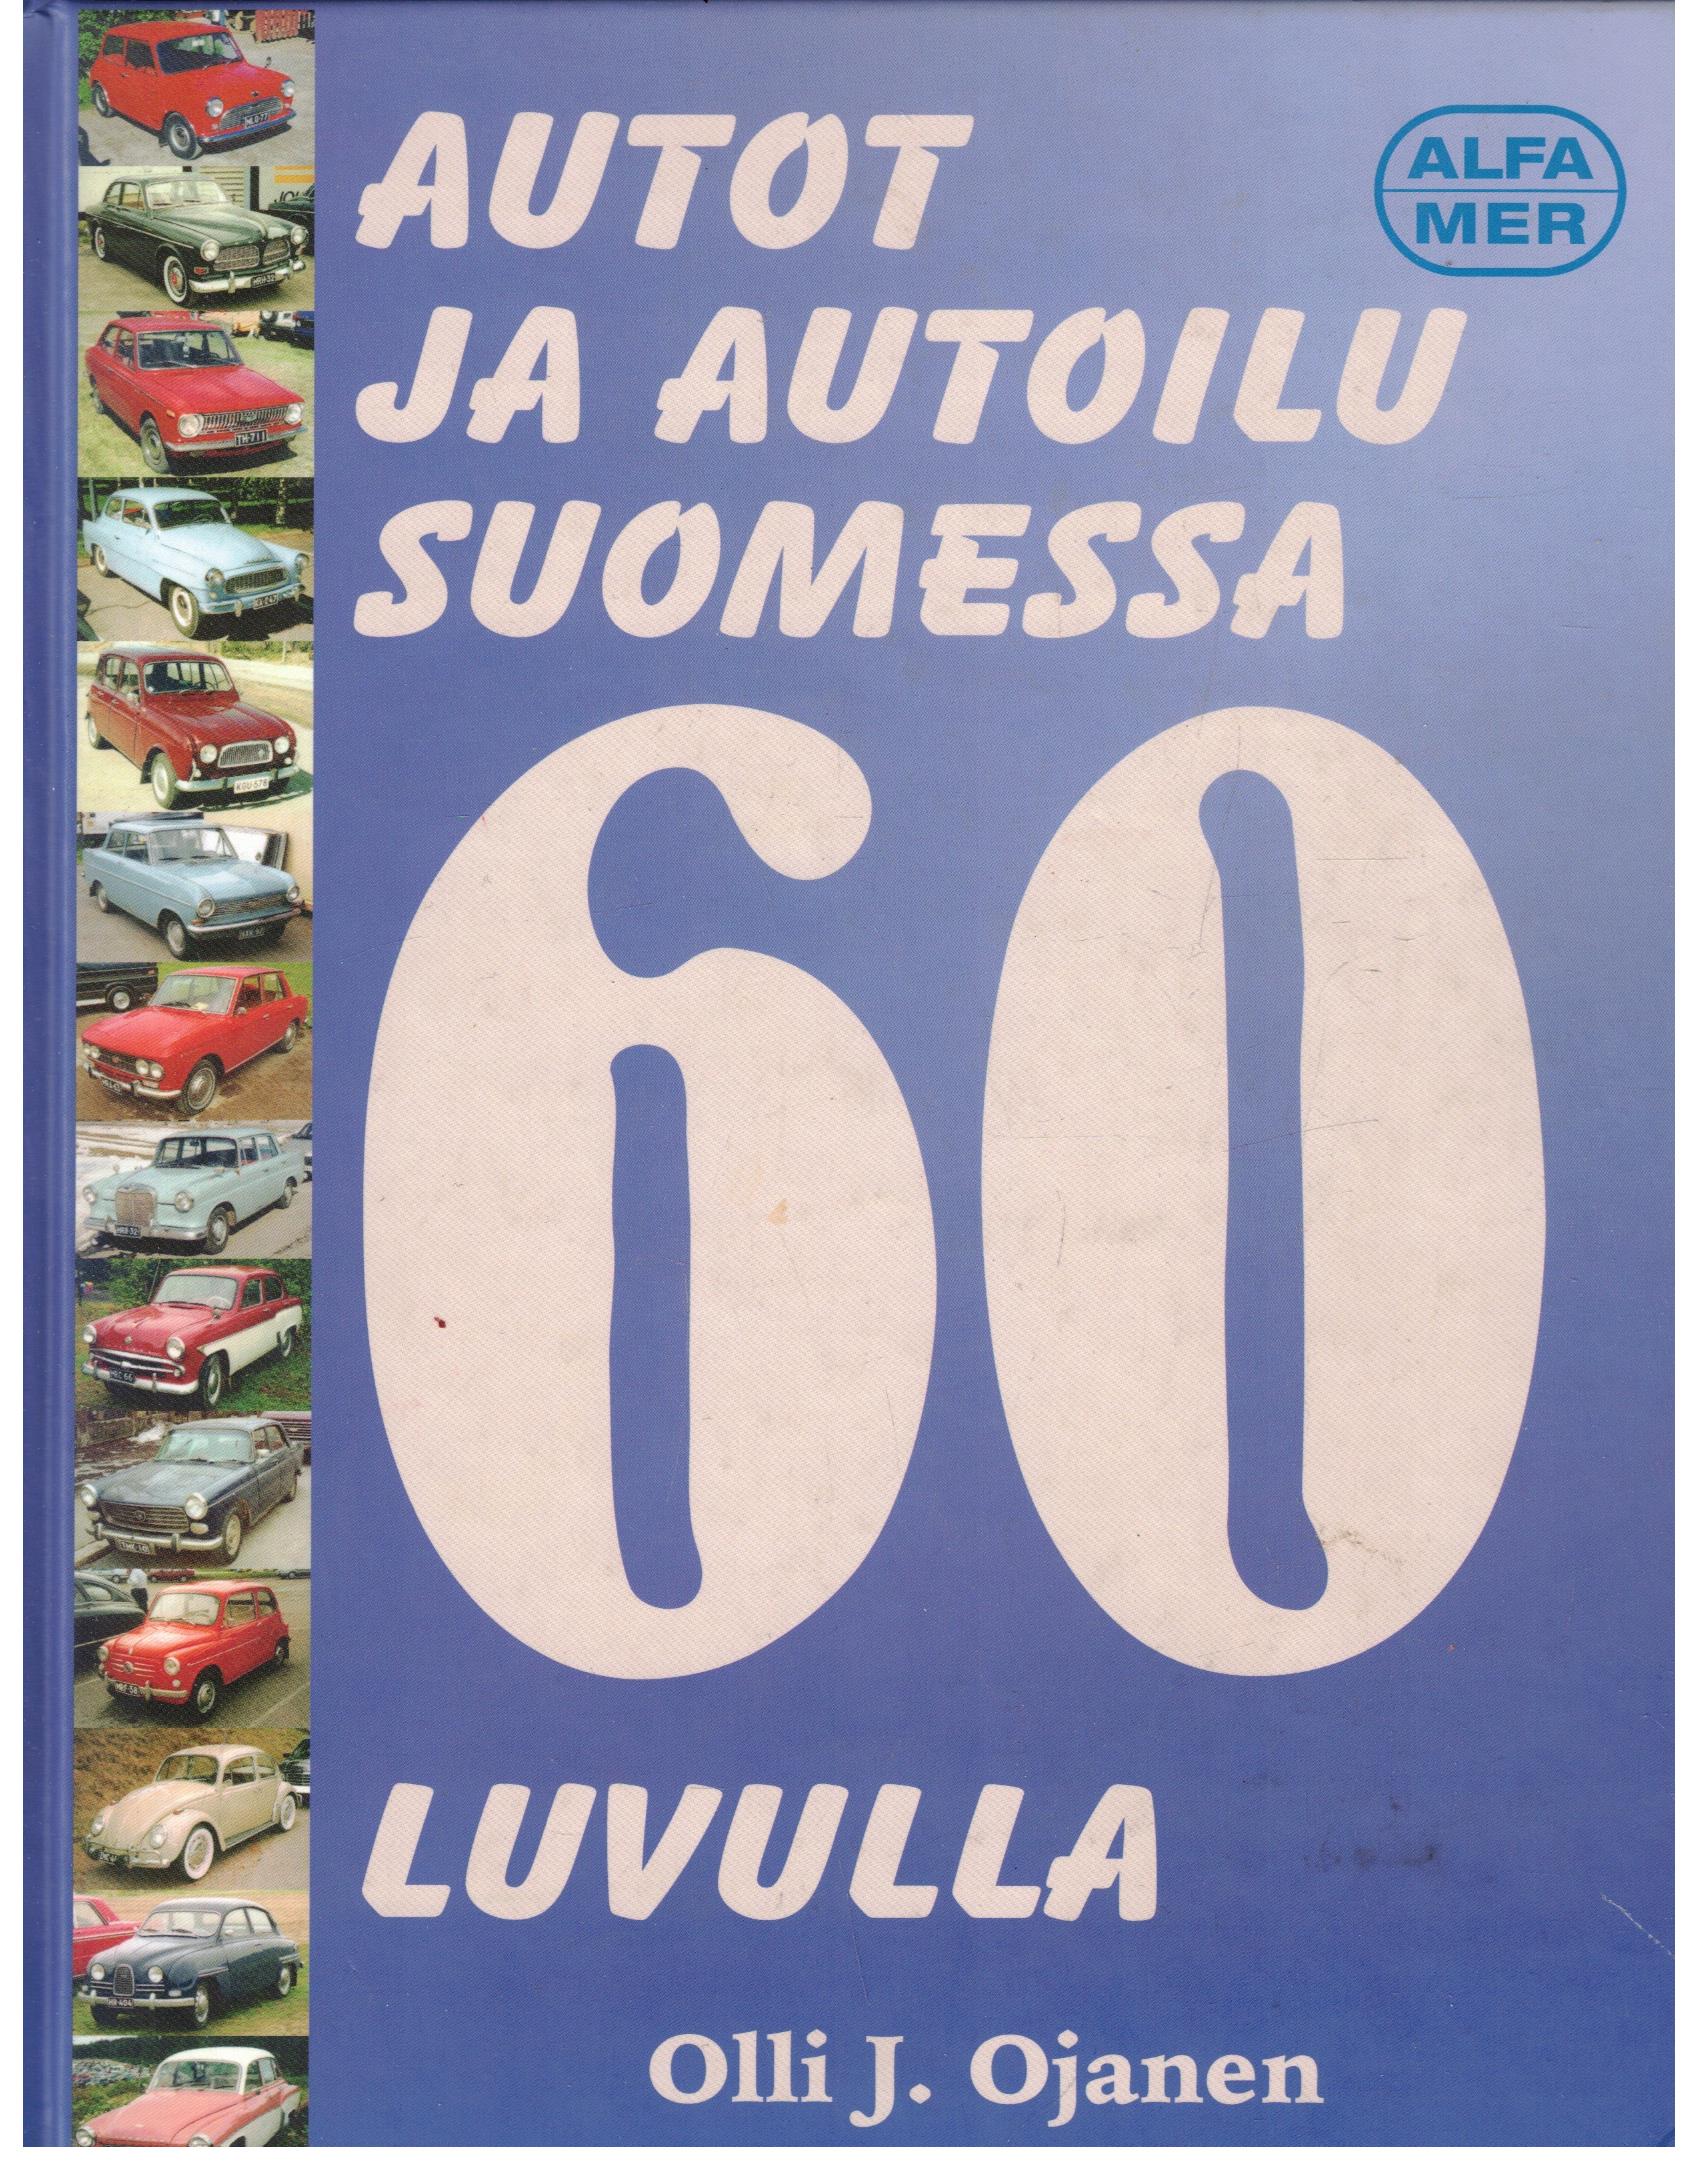 Autot ja autoilu Suomessa 60-luvulla